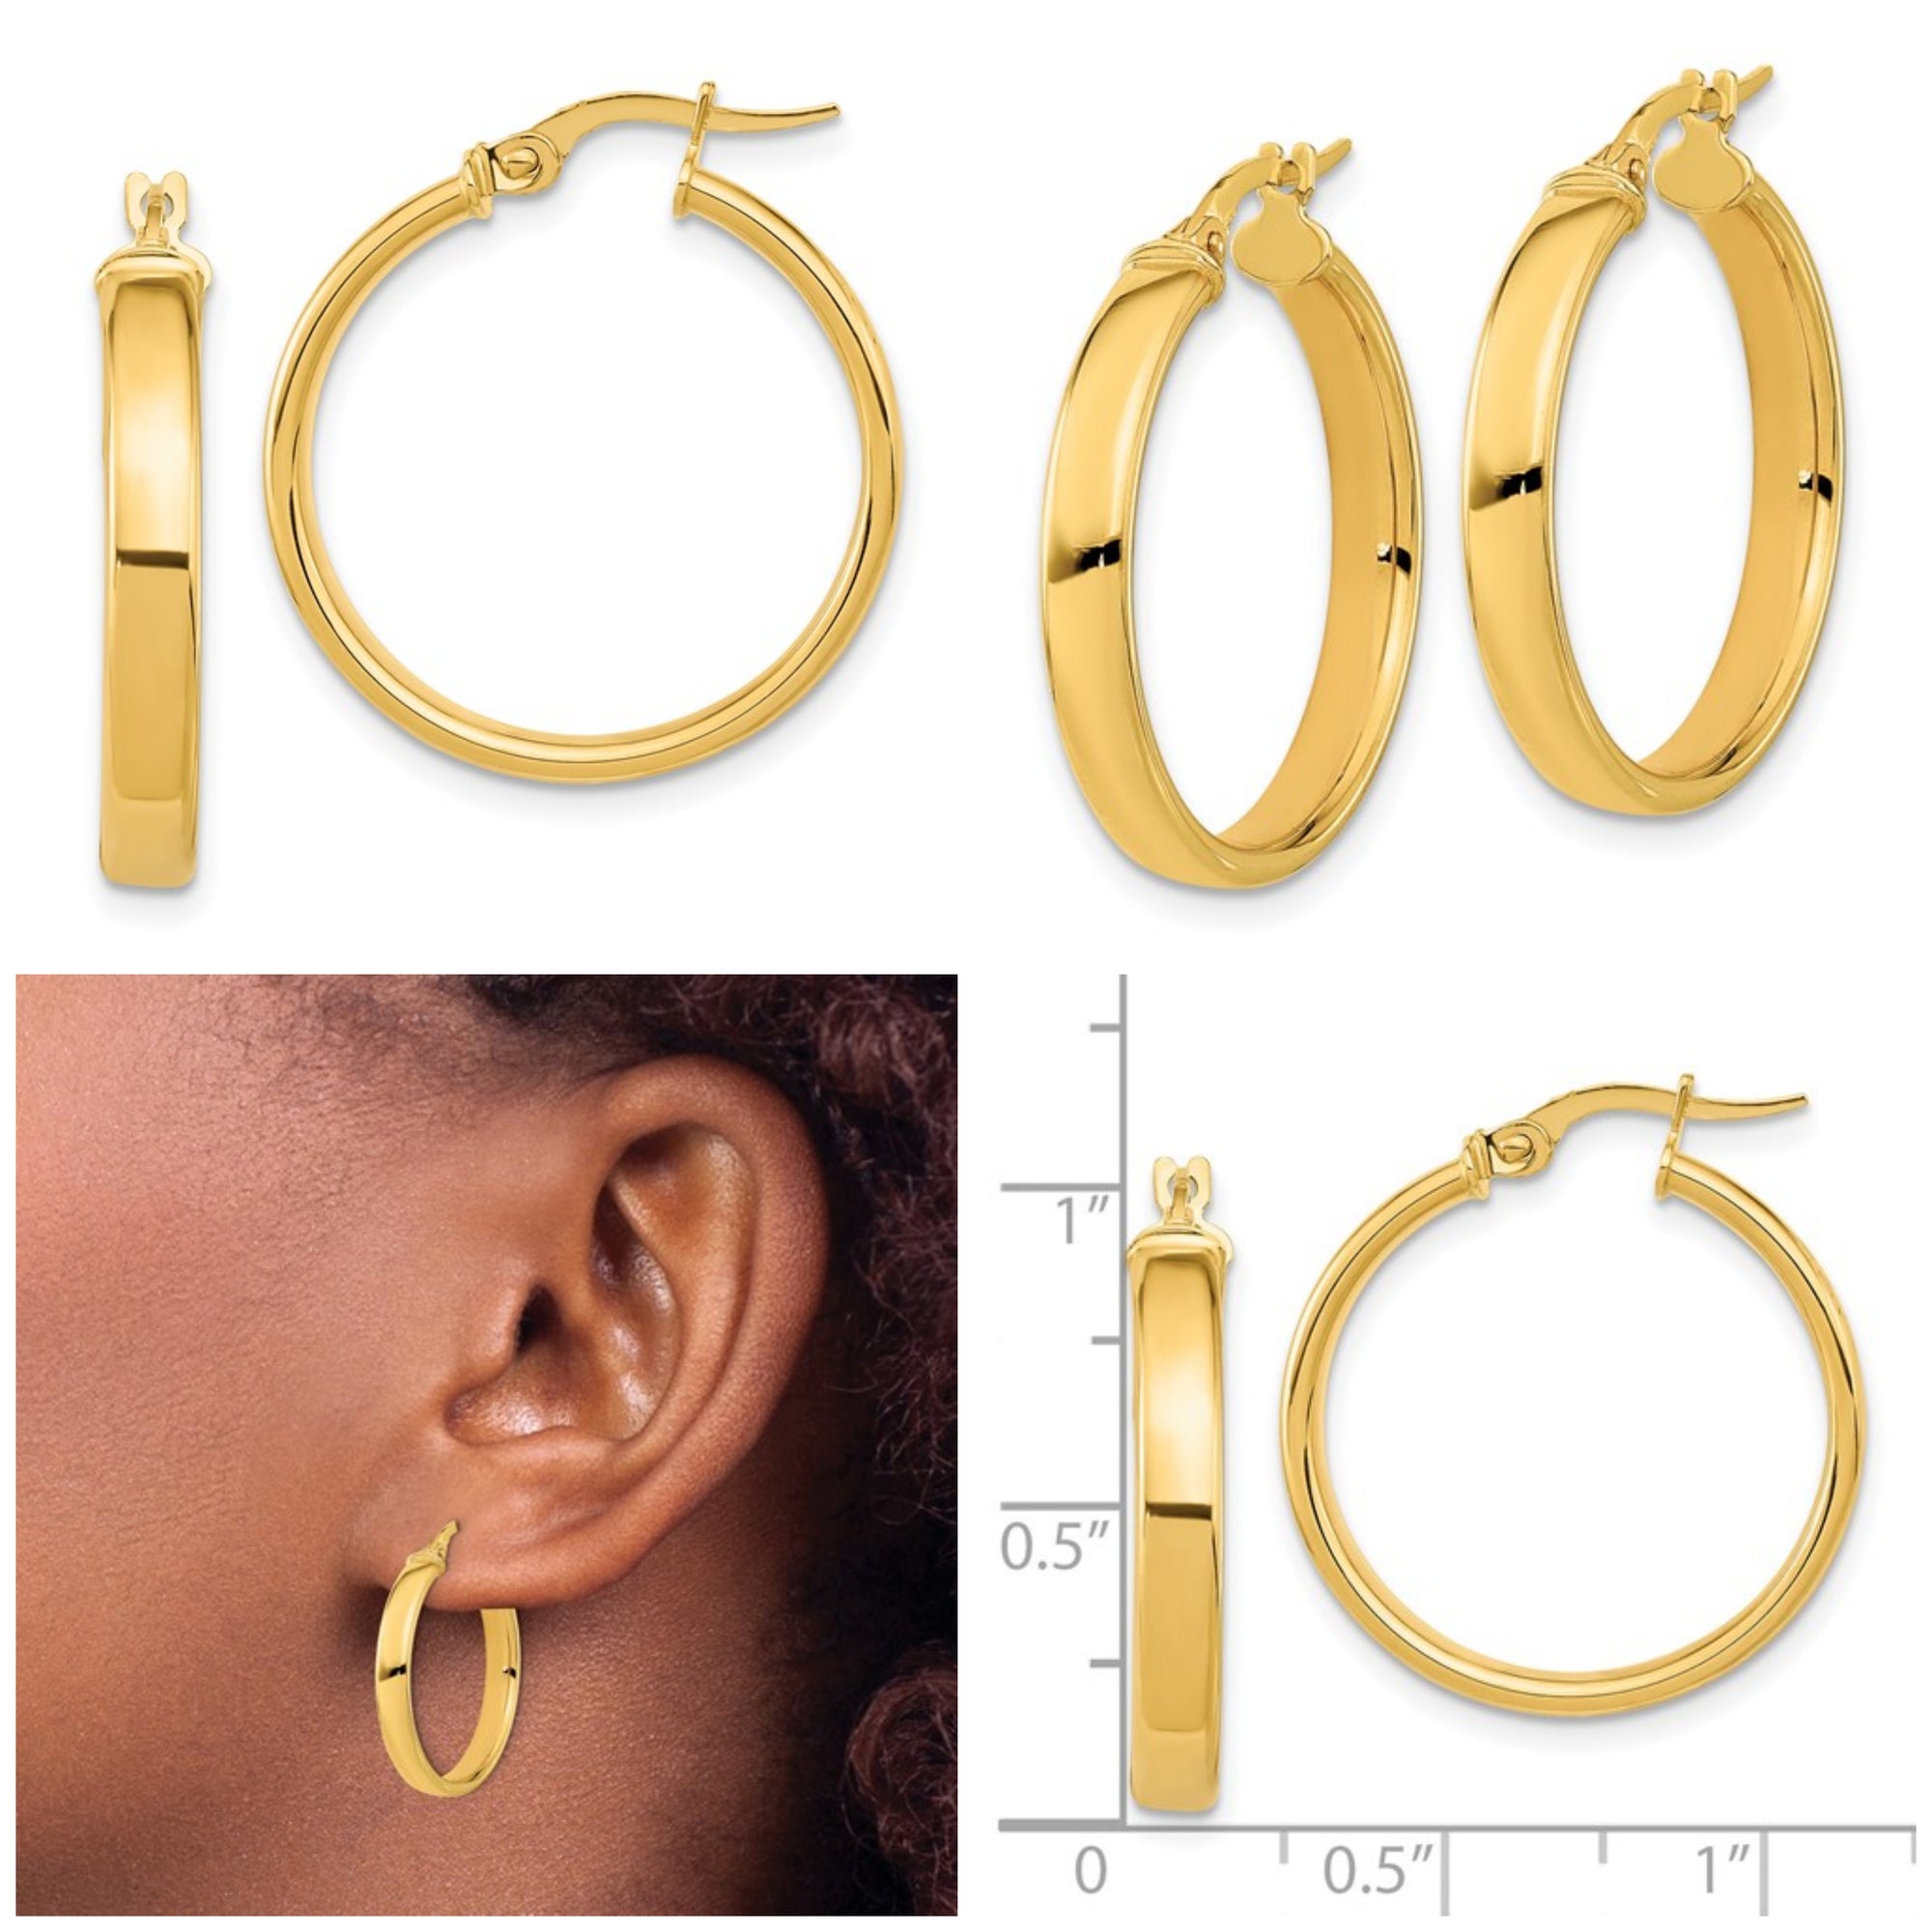 Leslie's 14K Gold 4mm Polished Hoop Earrings